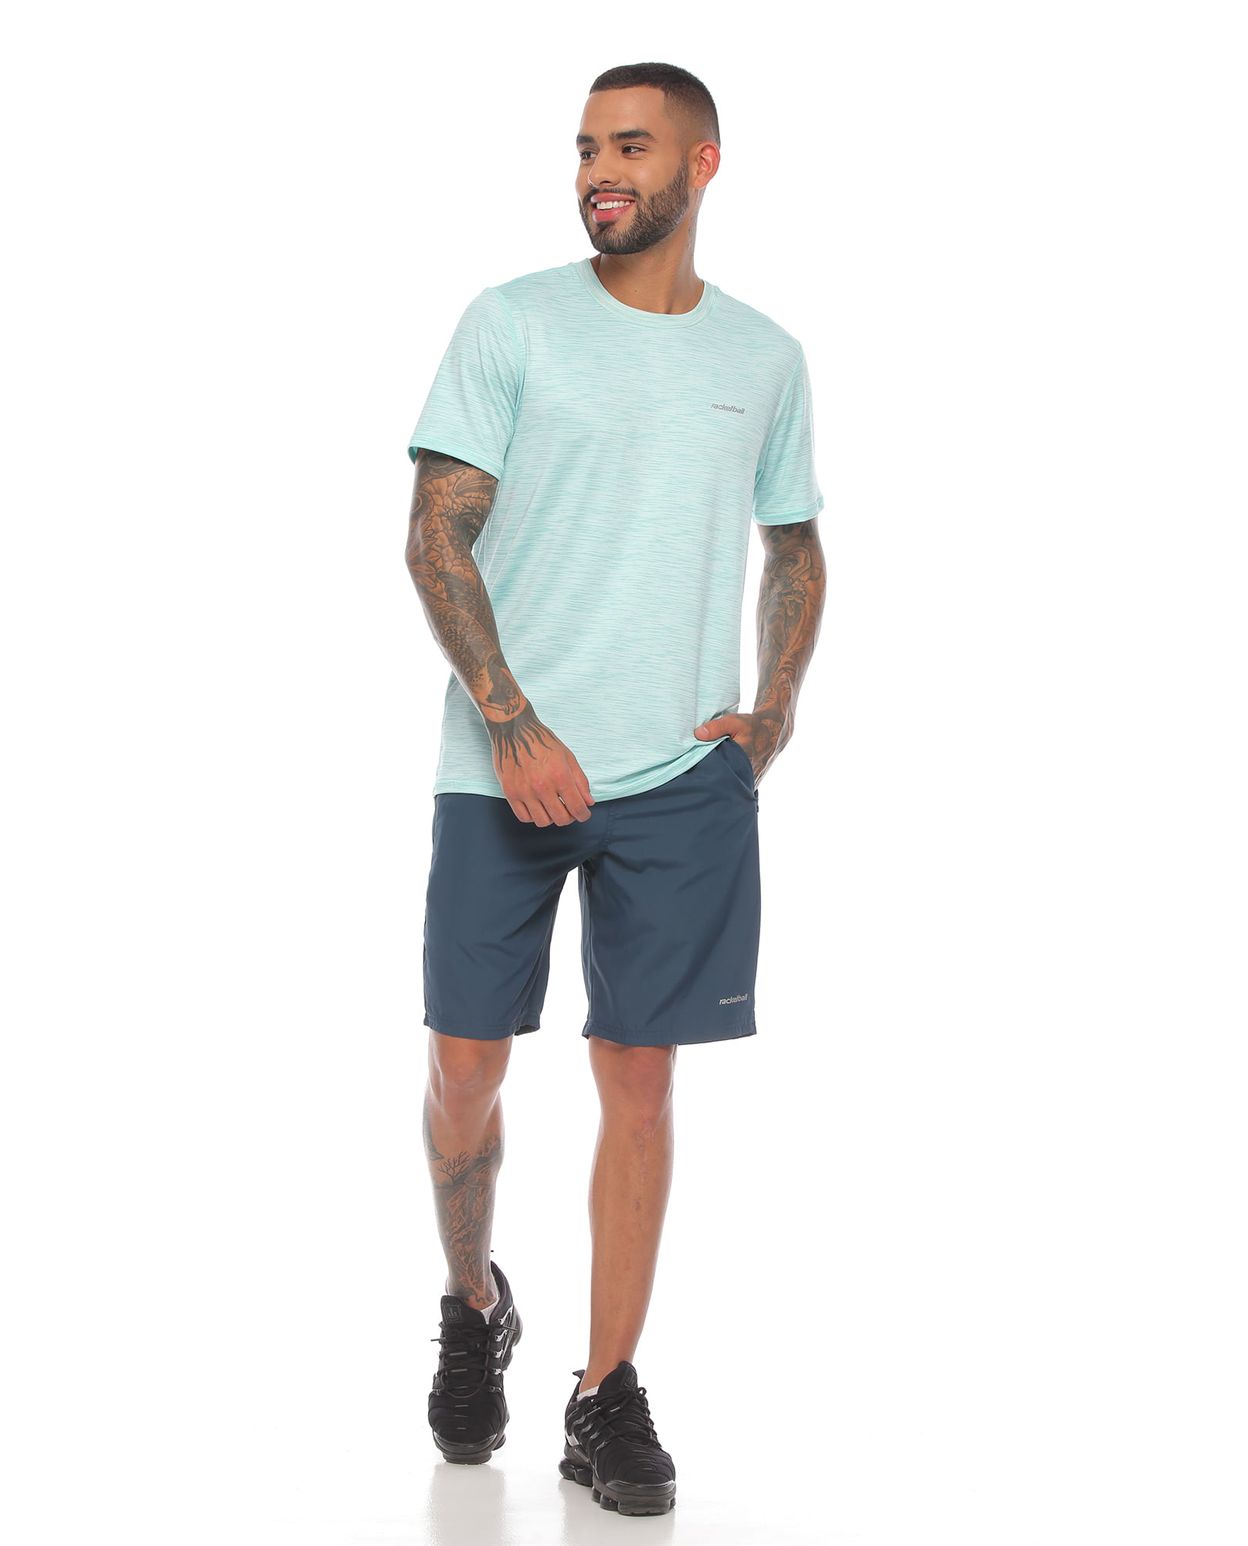 modelo con pantaloneta deportiva color petroleo y camiseta deportiva color verde para hombre cuerpo completo parte frontal